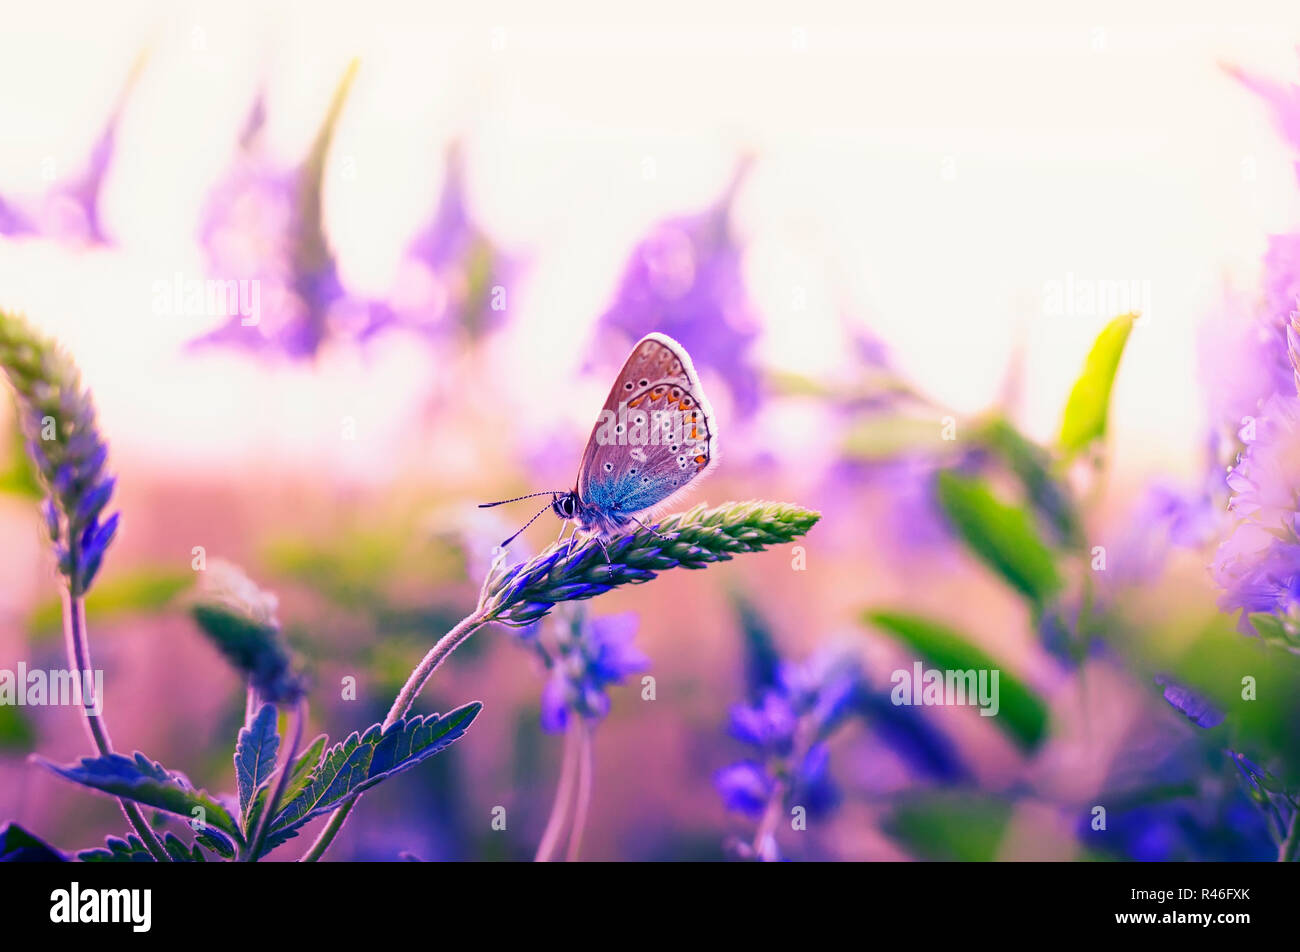 Schöne kleine Schmetterling Taube flog auf einer Sommerwiese und sitzt durch die blauen und violetten Blüten und die Strahlen der Sonnenuntergang Sonne umgeben Stockfoto